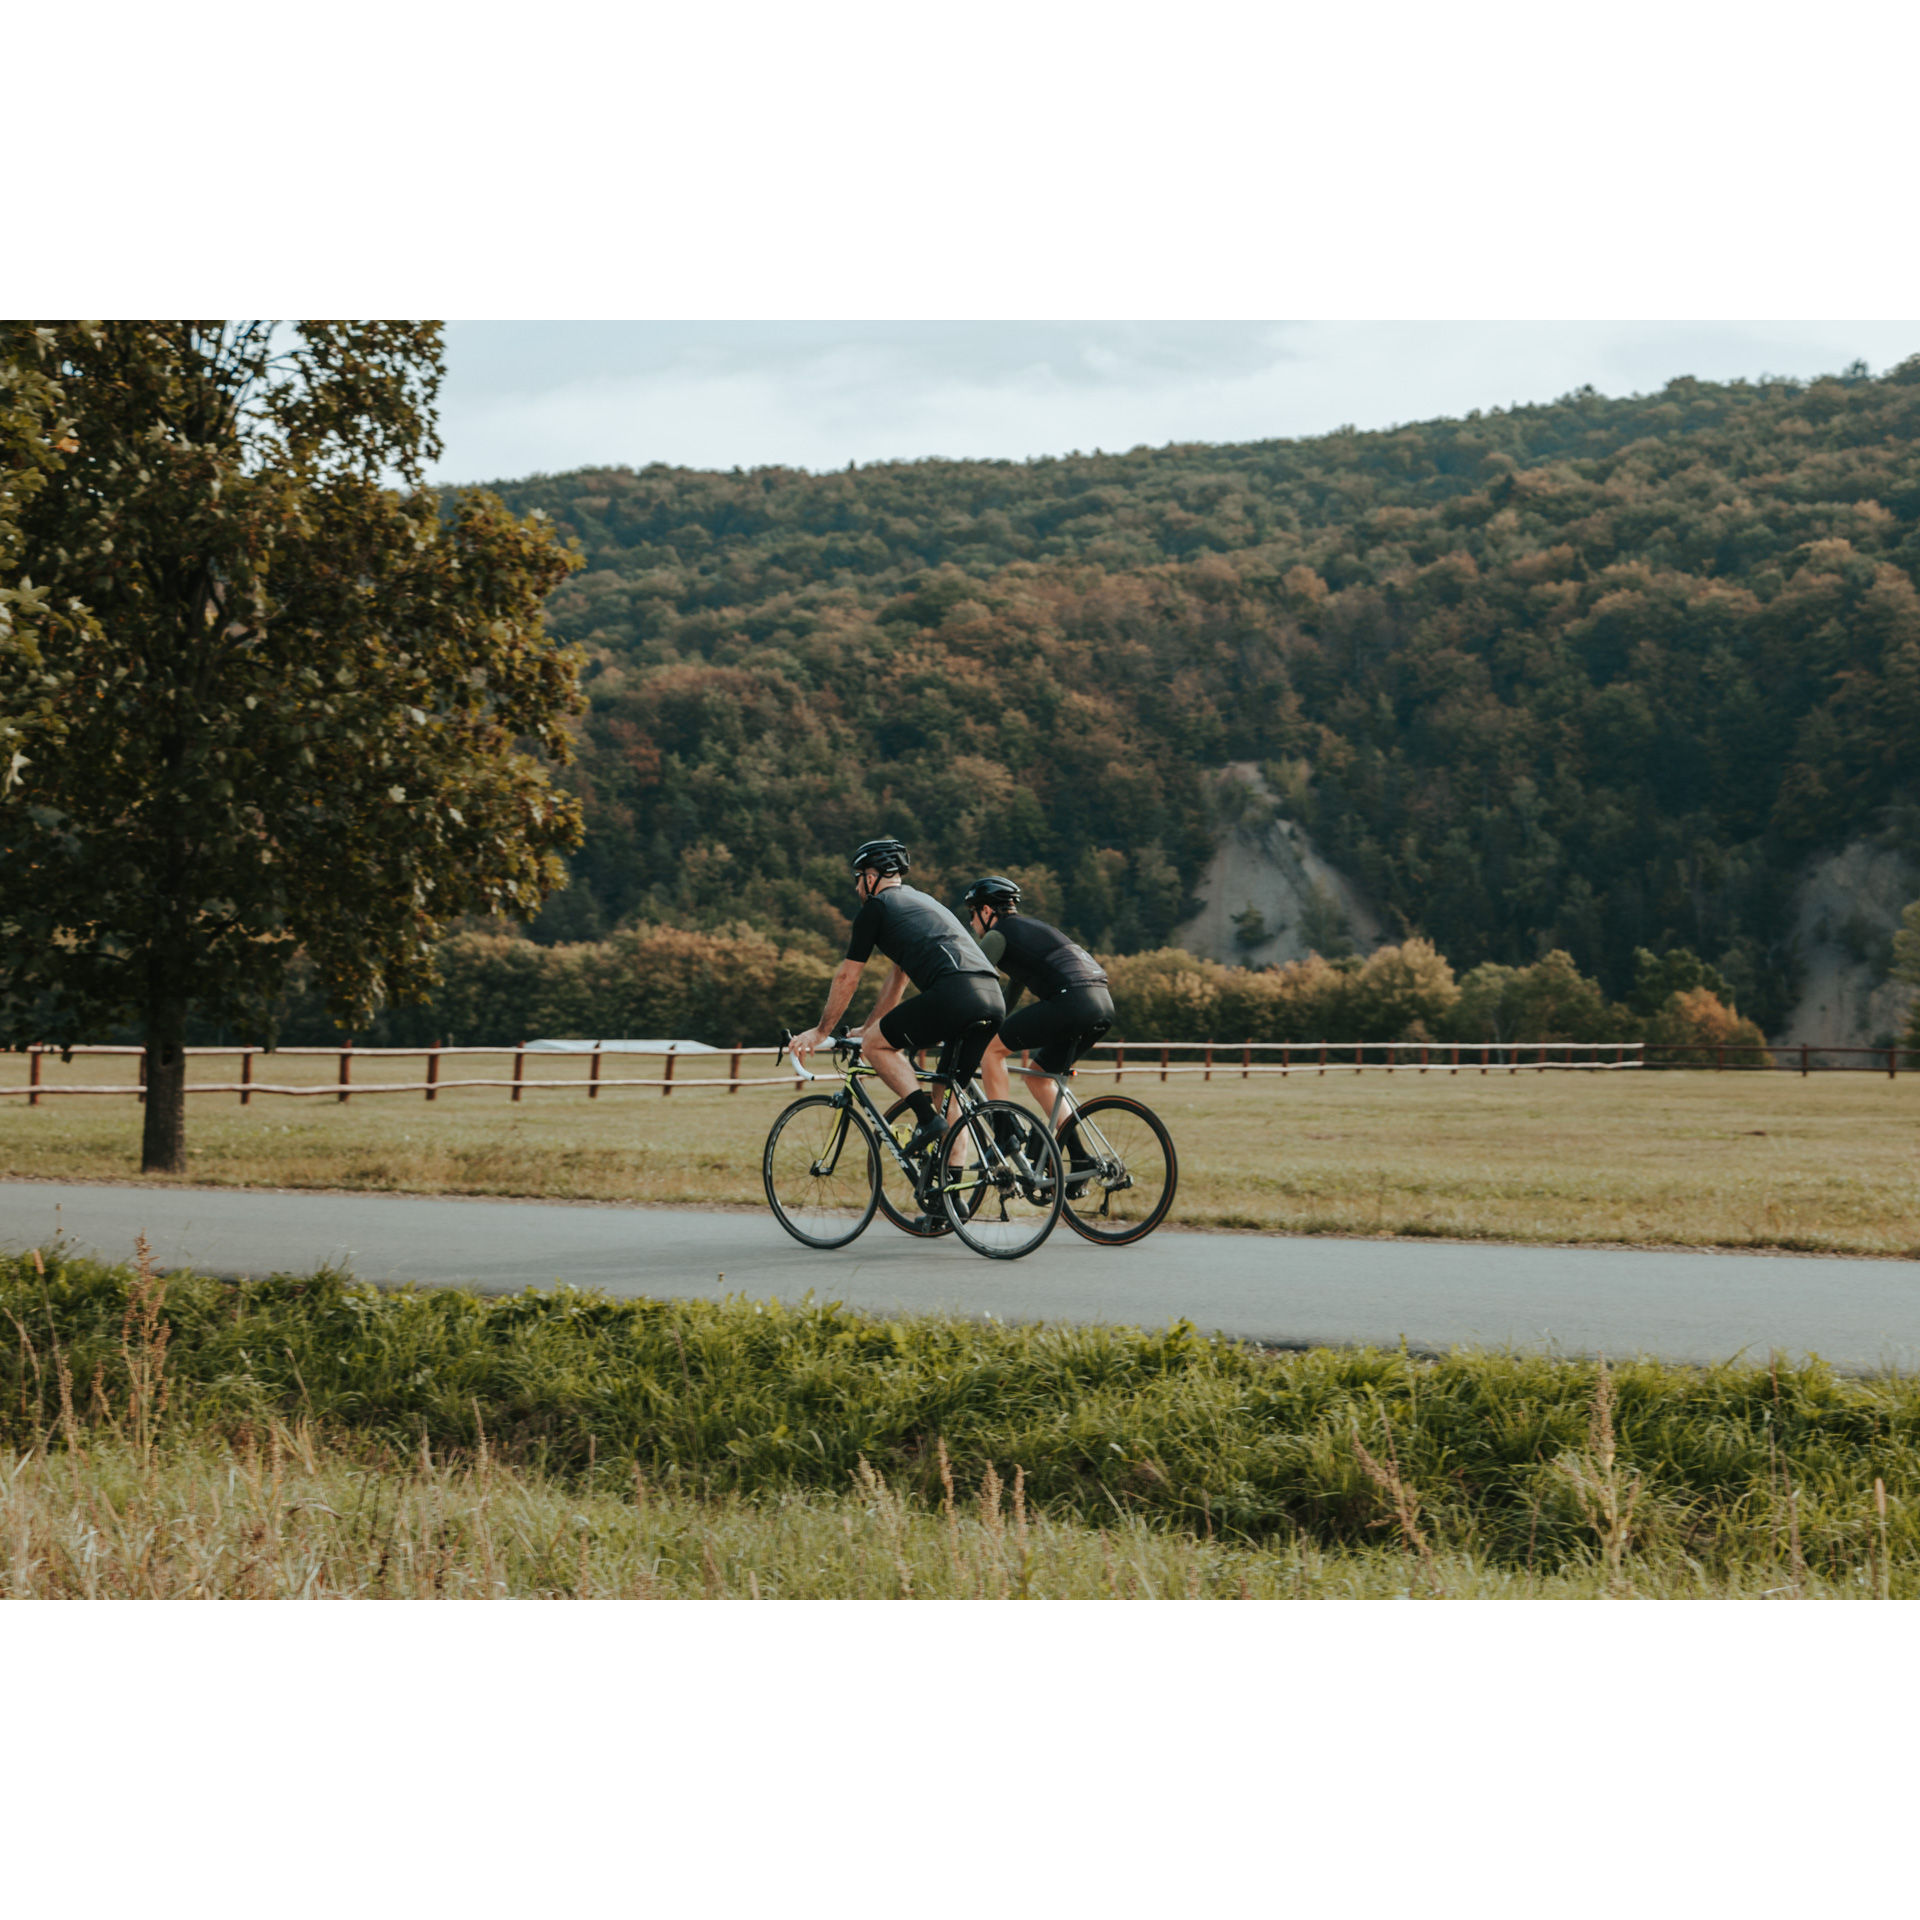 Dwóch kolarzy w kaskach i czarnych strojach jadących rowerami po asfaltowej drodze na tle wzgórza porośniętego drzewami